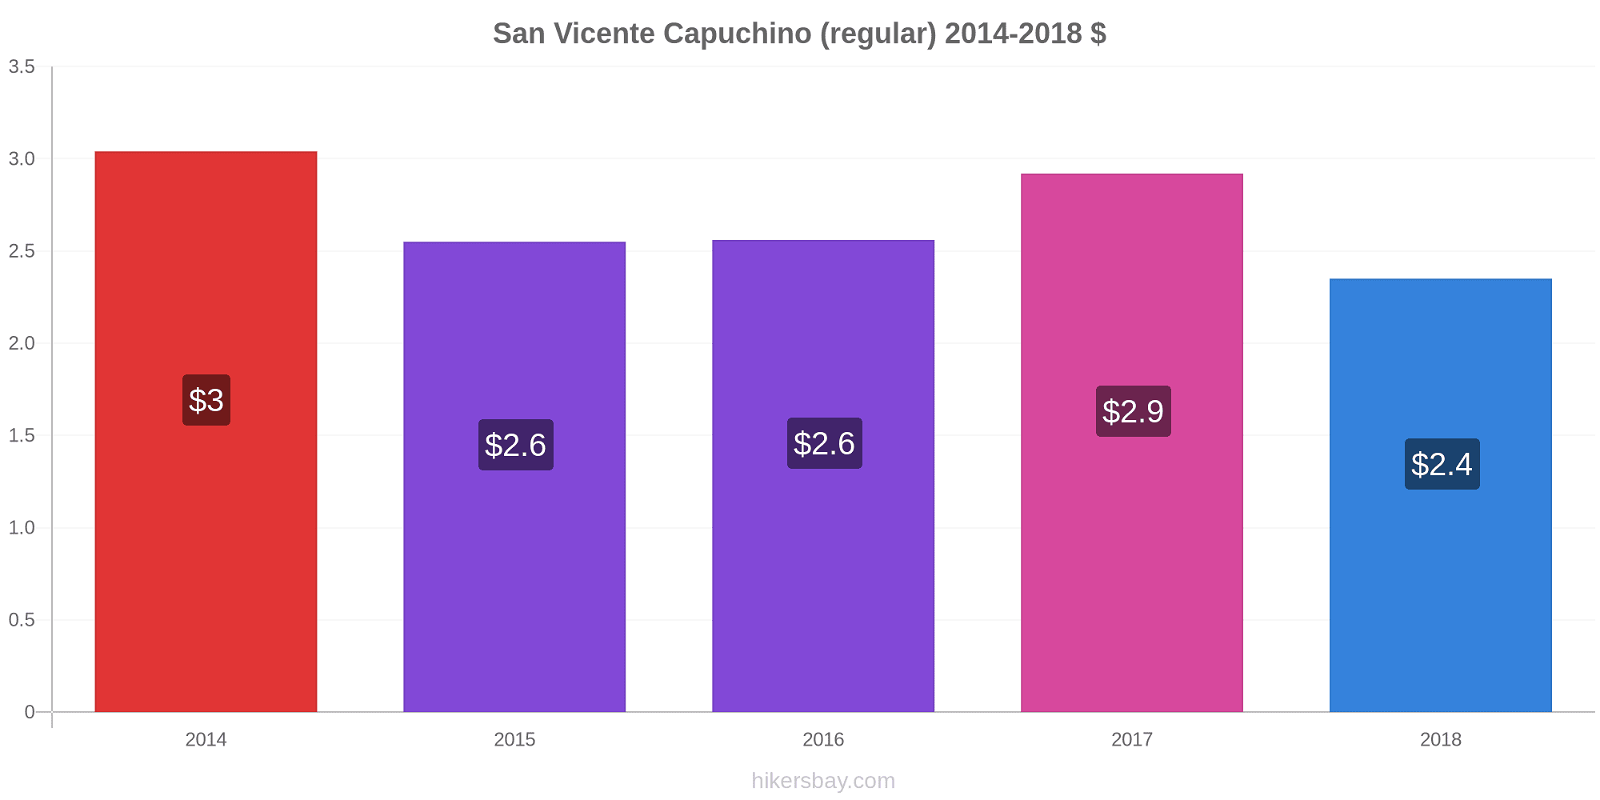 San Vicente cambios de precios Capuchino (regular) hikersbay.com